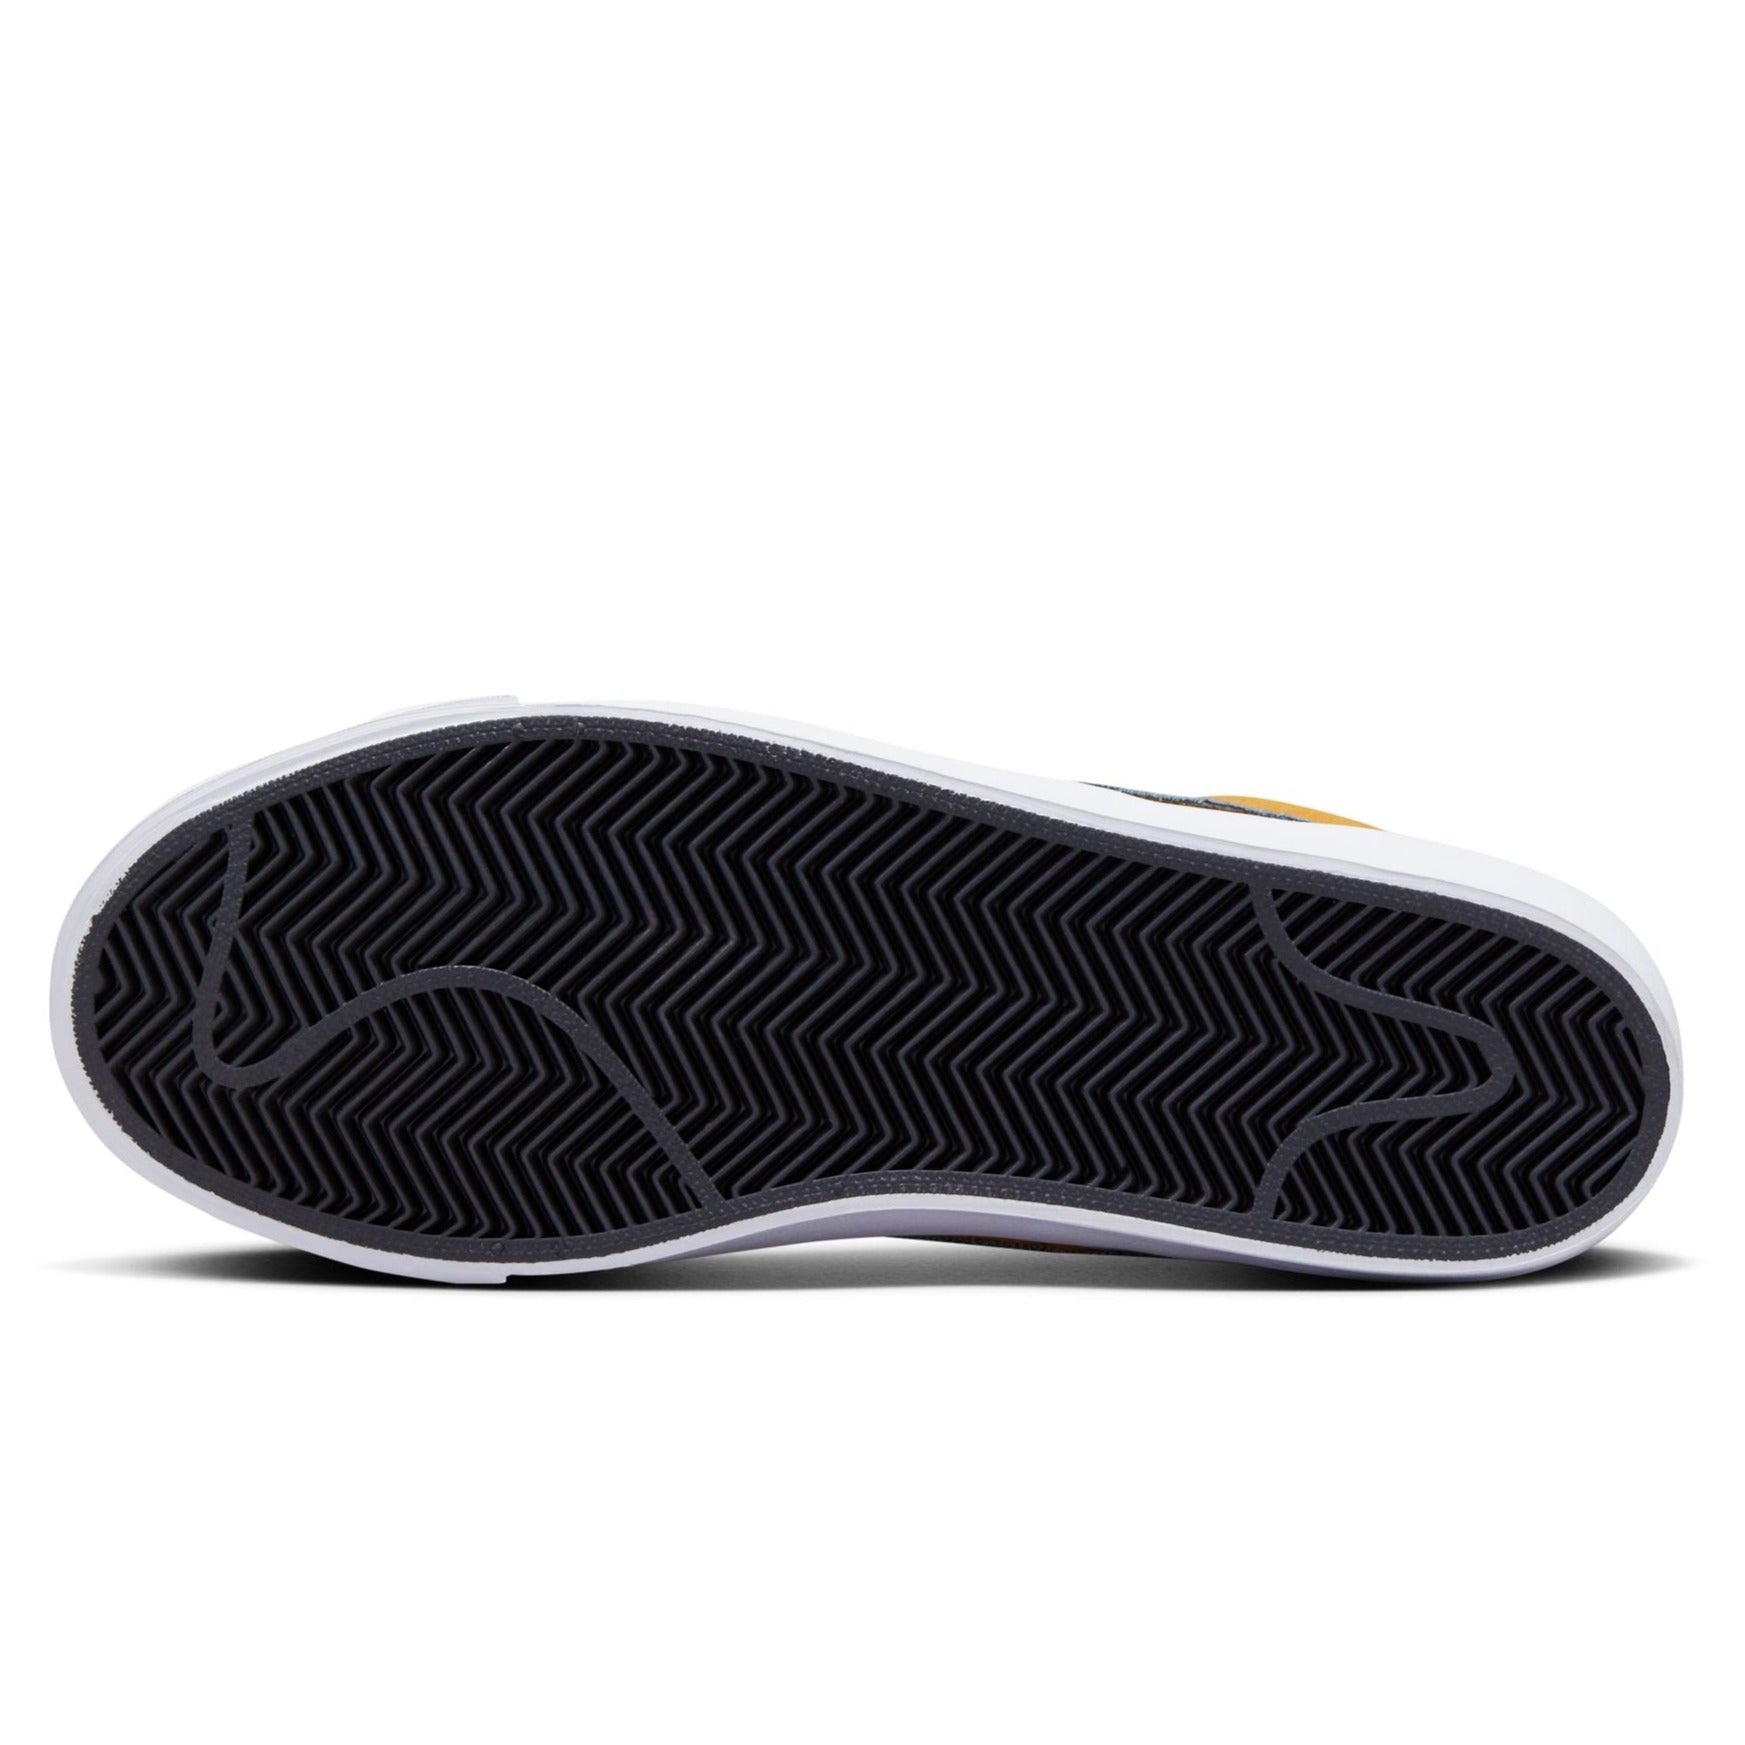 GT Pro Blazer Mid Nike SB Skate Shoe Bottom